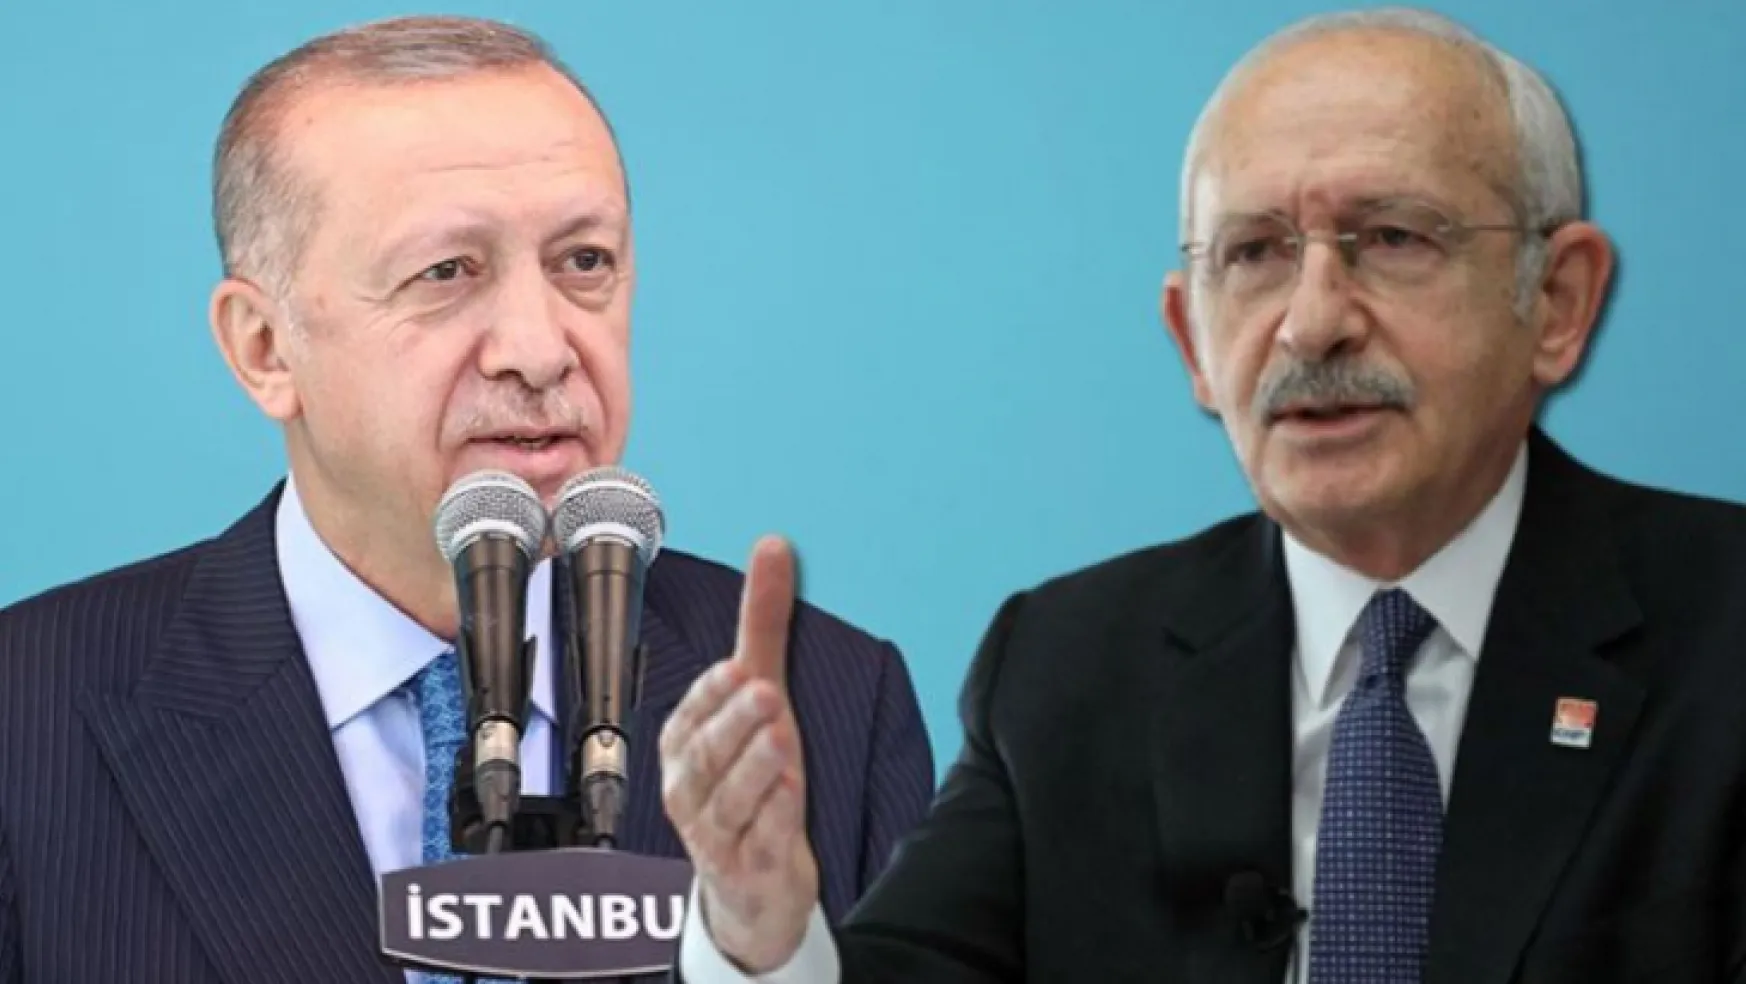 Kılıçdaroğlu: Erdoğan'ın adaylığına kilitlenmeyeceğiz